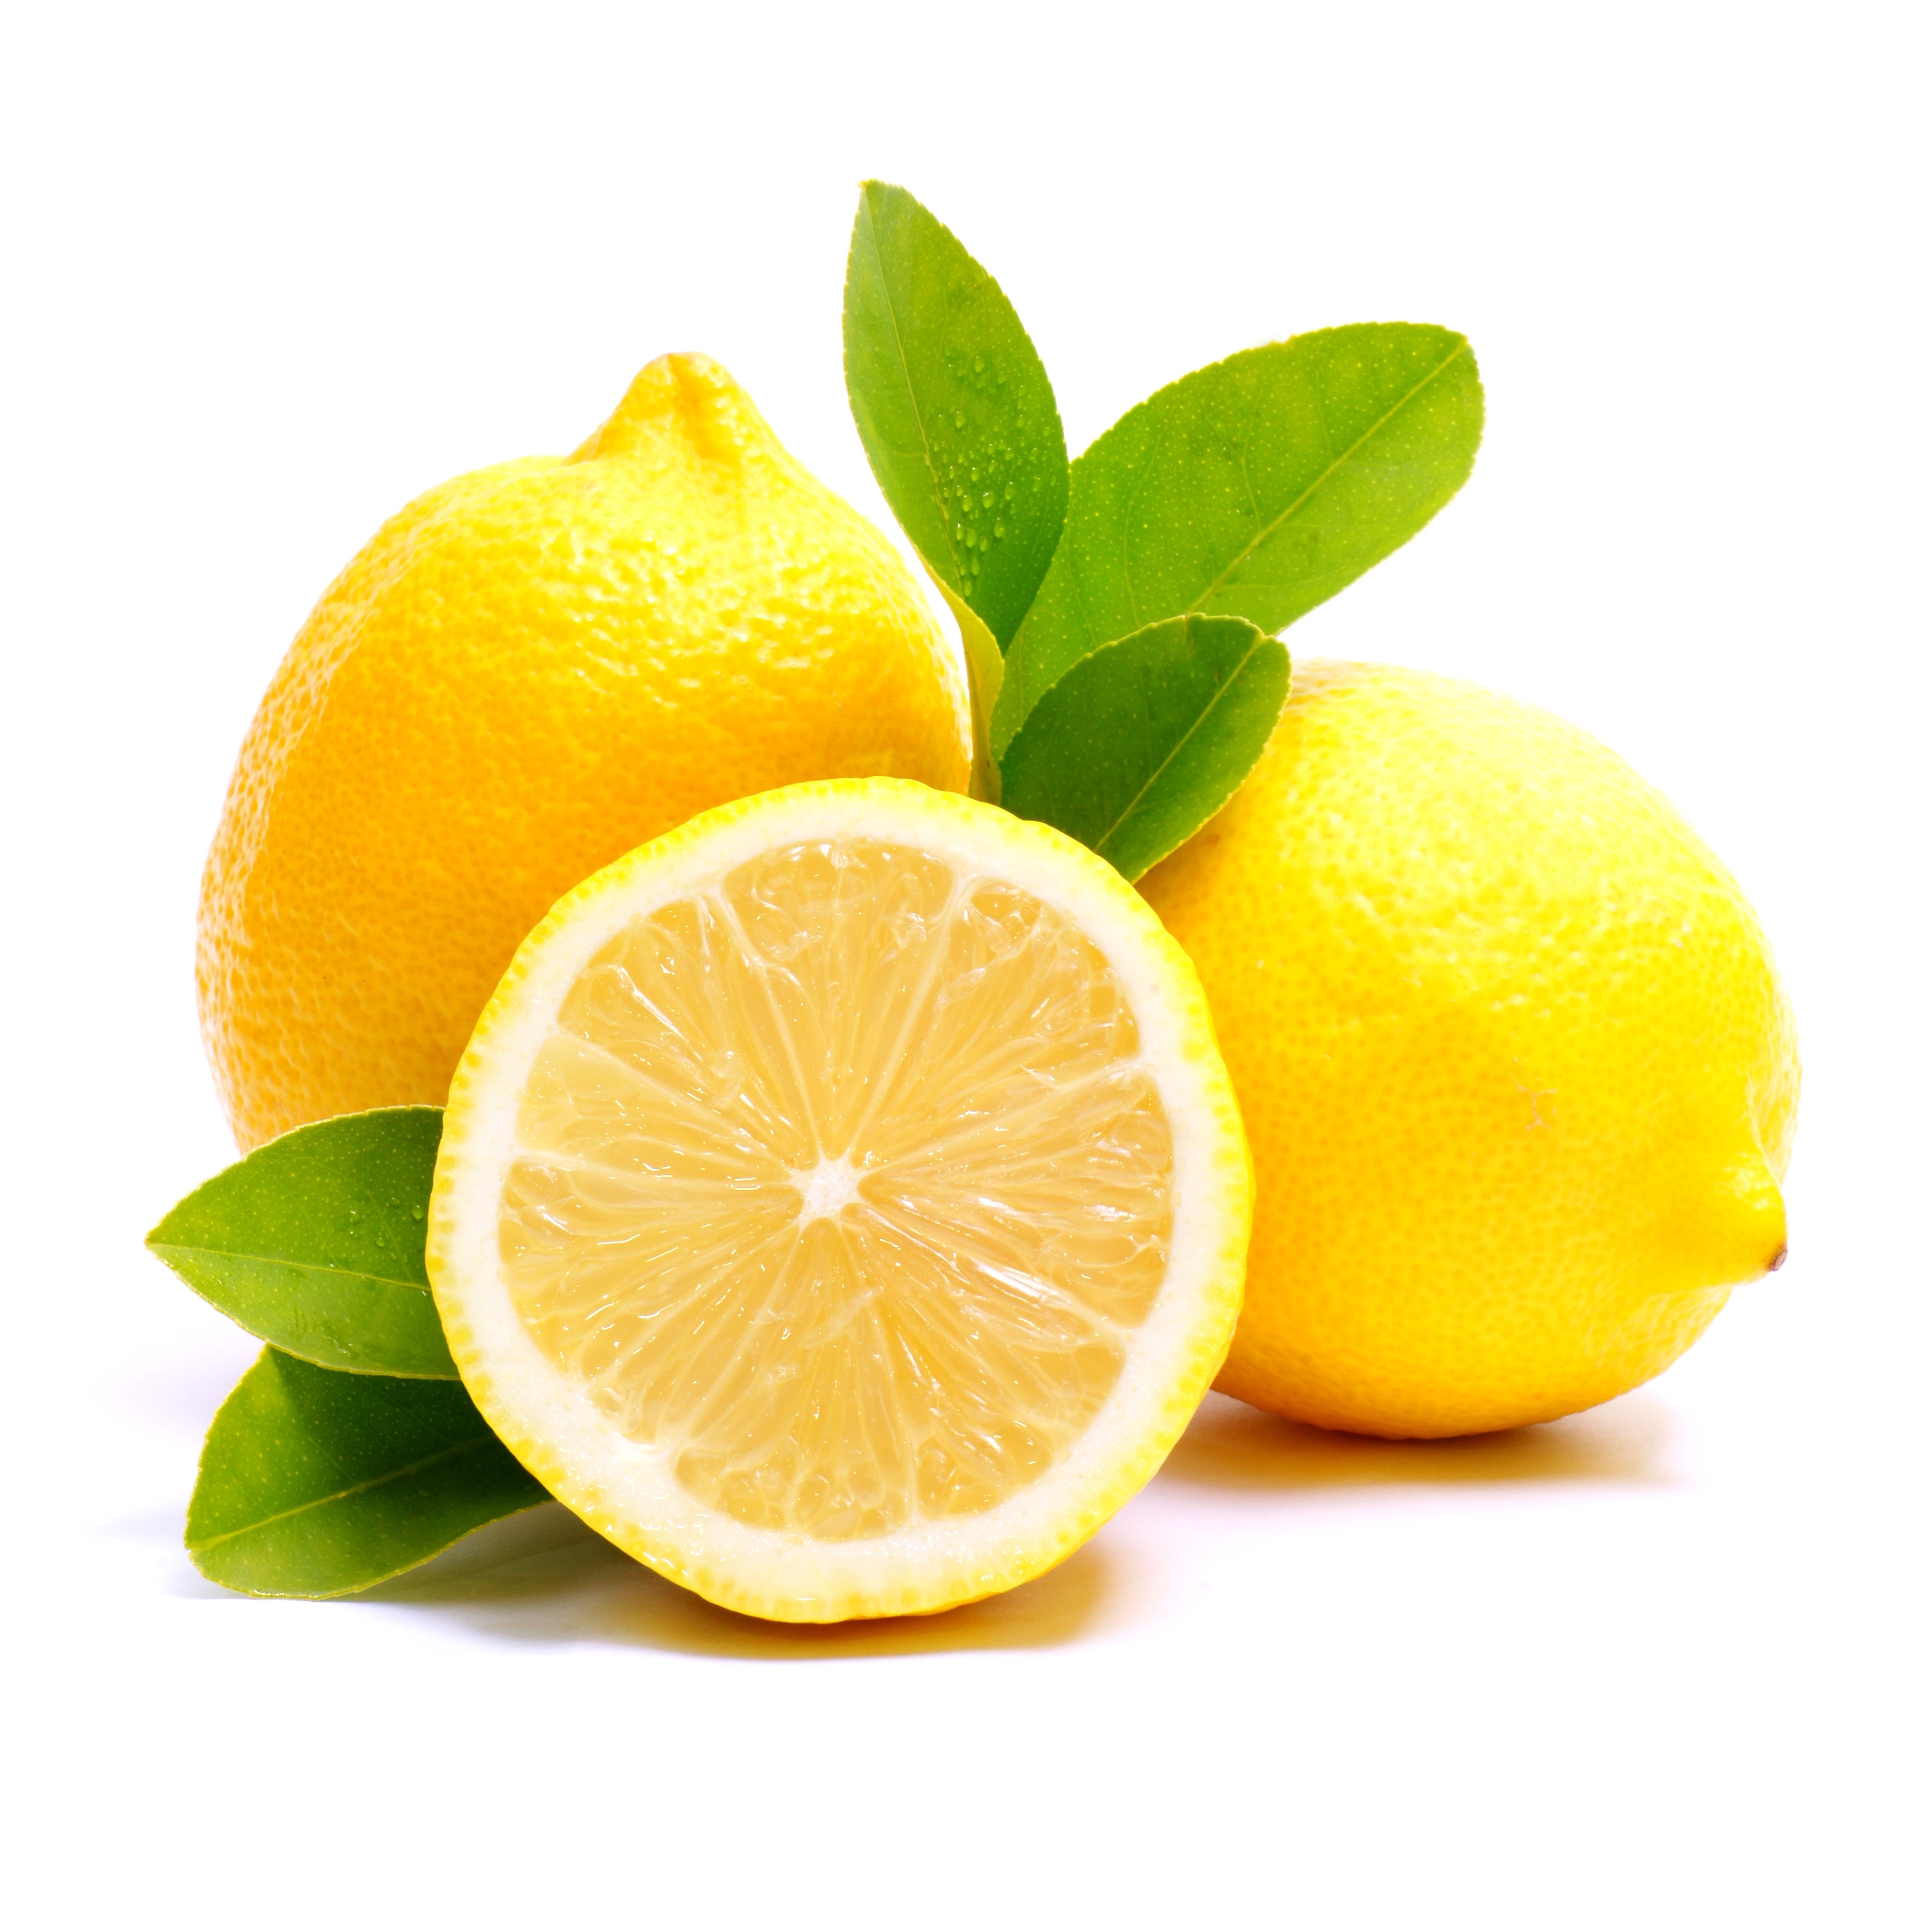 come far maturare i limoni